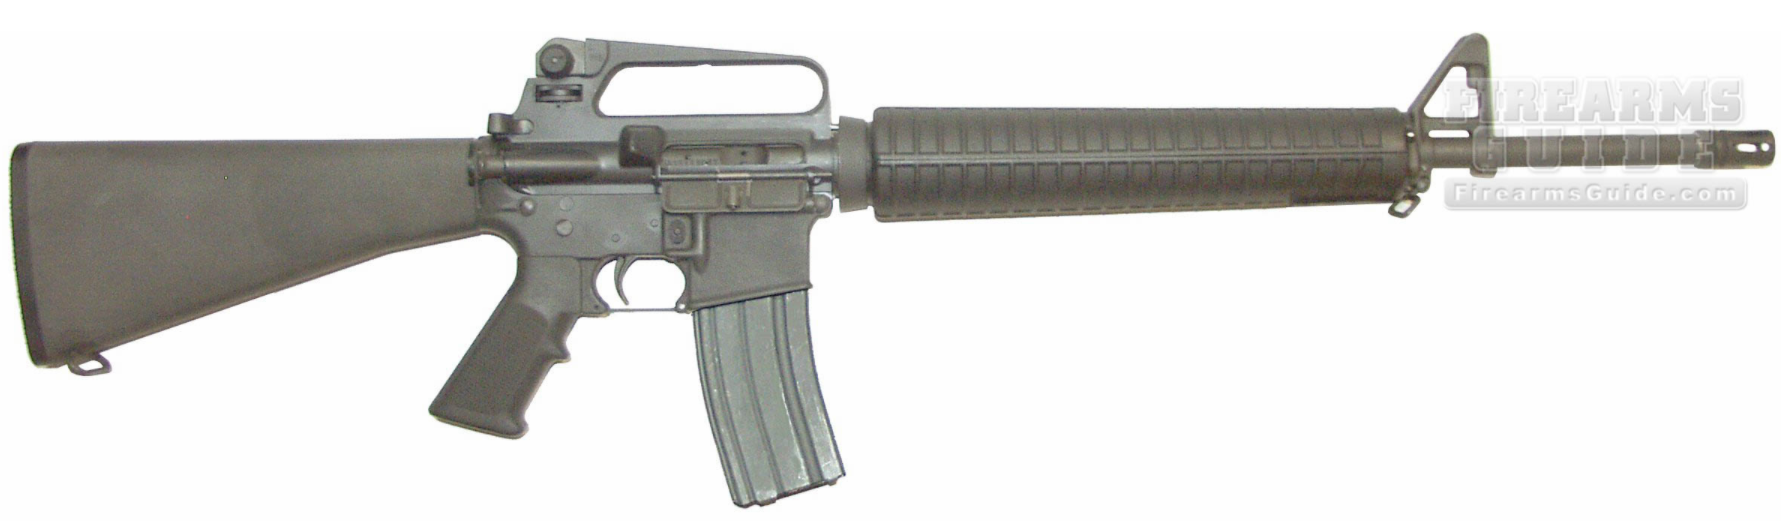 HSA M16A2 Military.